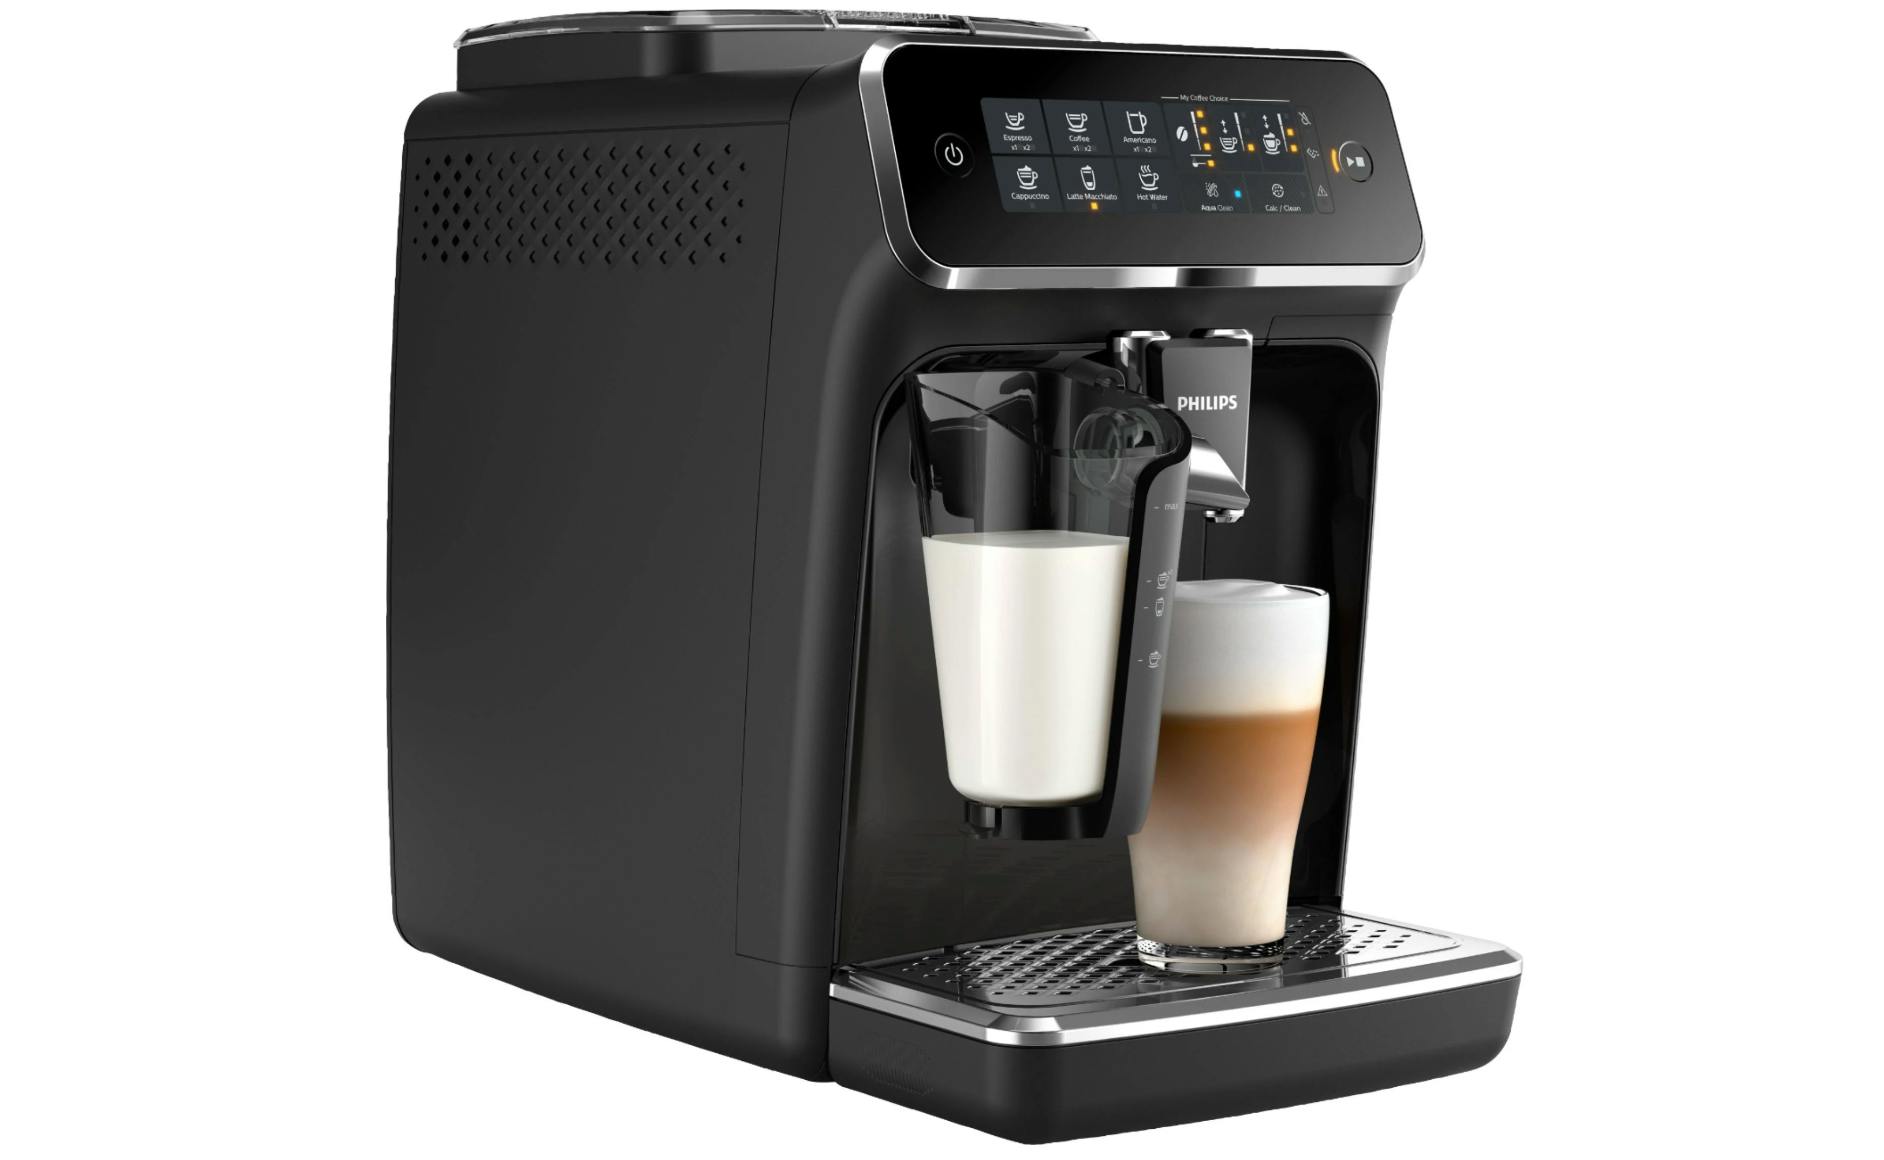 Philips Carina 1200 Automatic Espresso Machine and Latte Maker